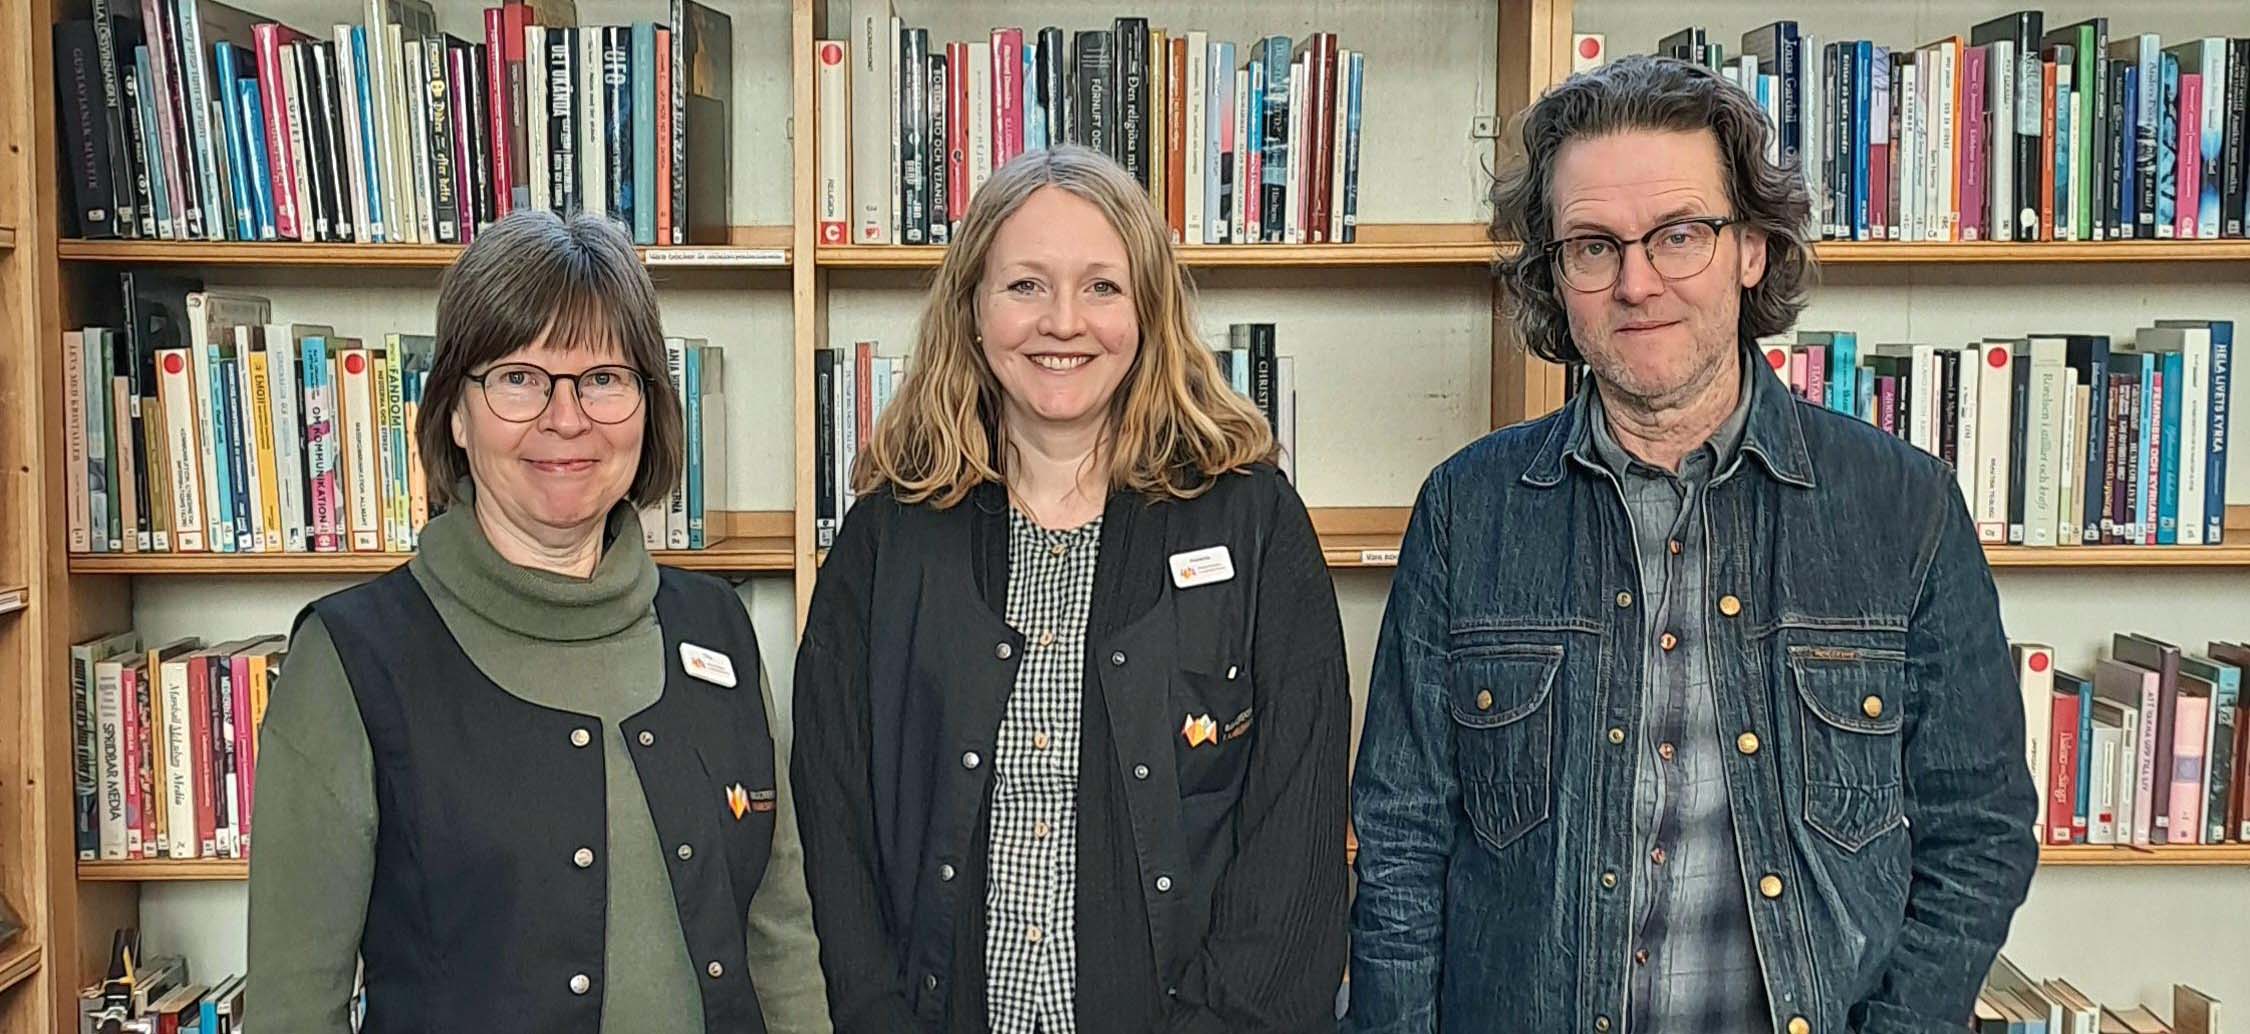 Christina Westermark, Helena Holmberg och Bengt-Gunnar Österberg arbetar tillsammans i projektet Biblioteken som tankesmedjor.